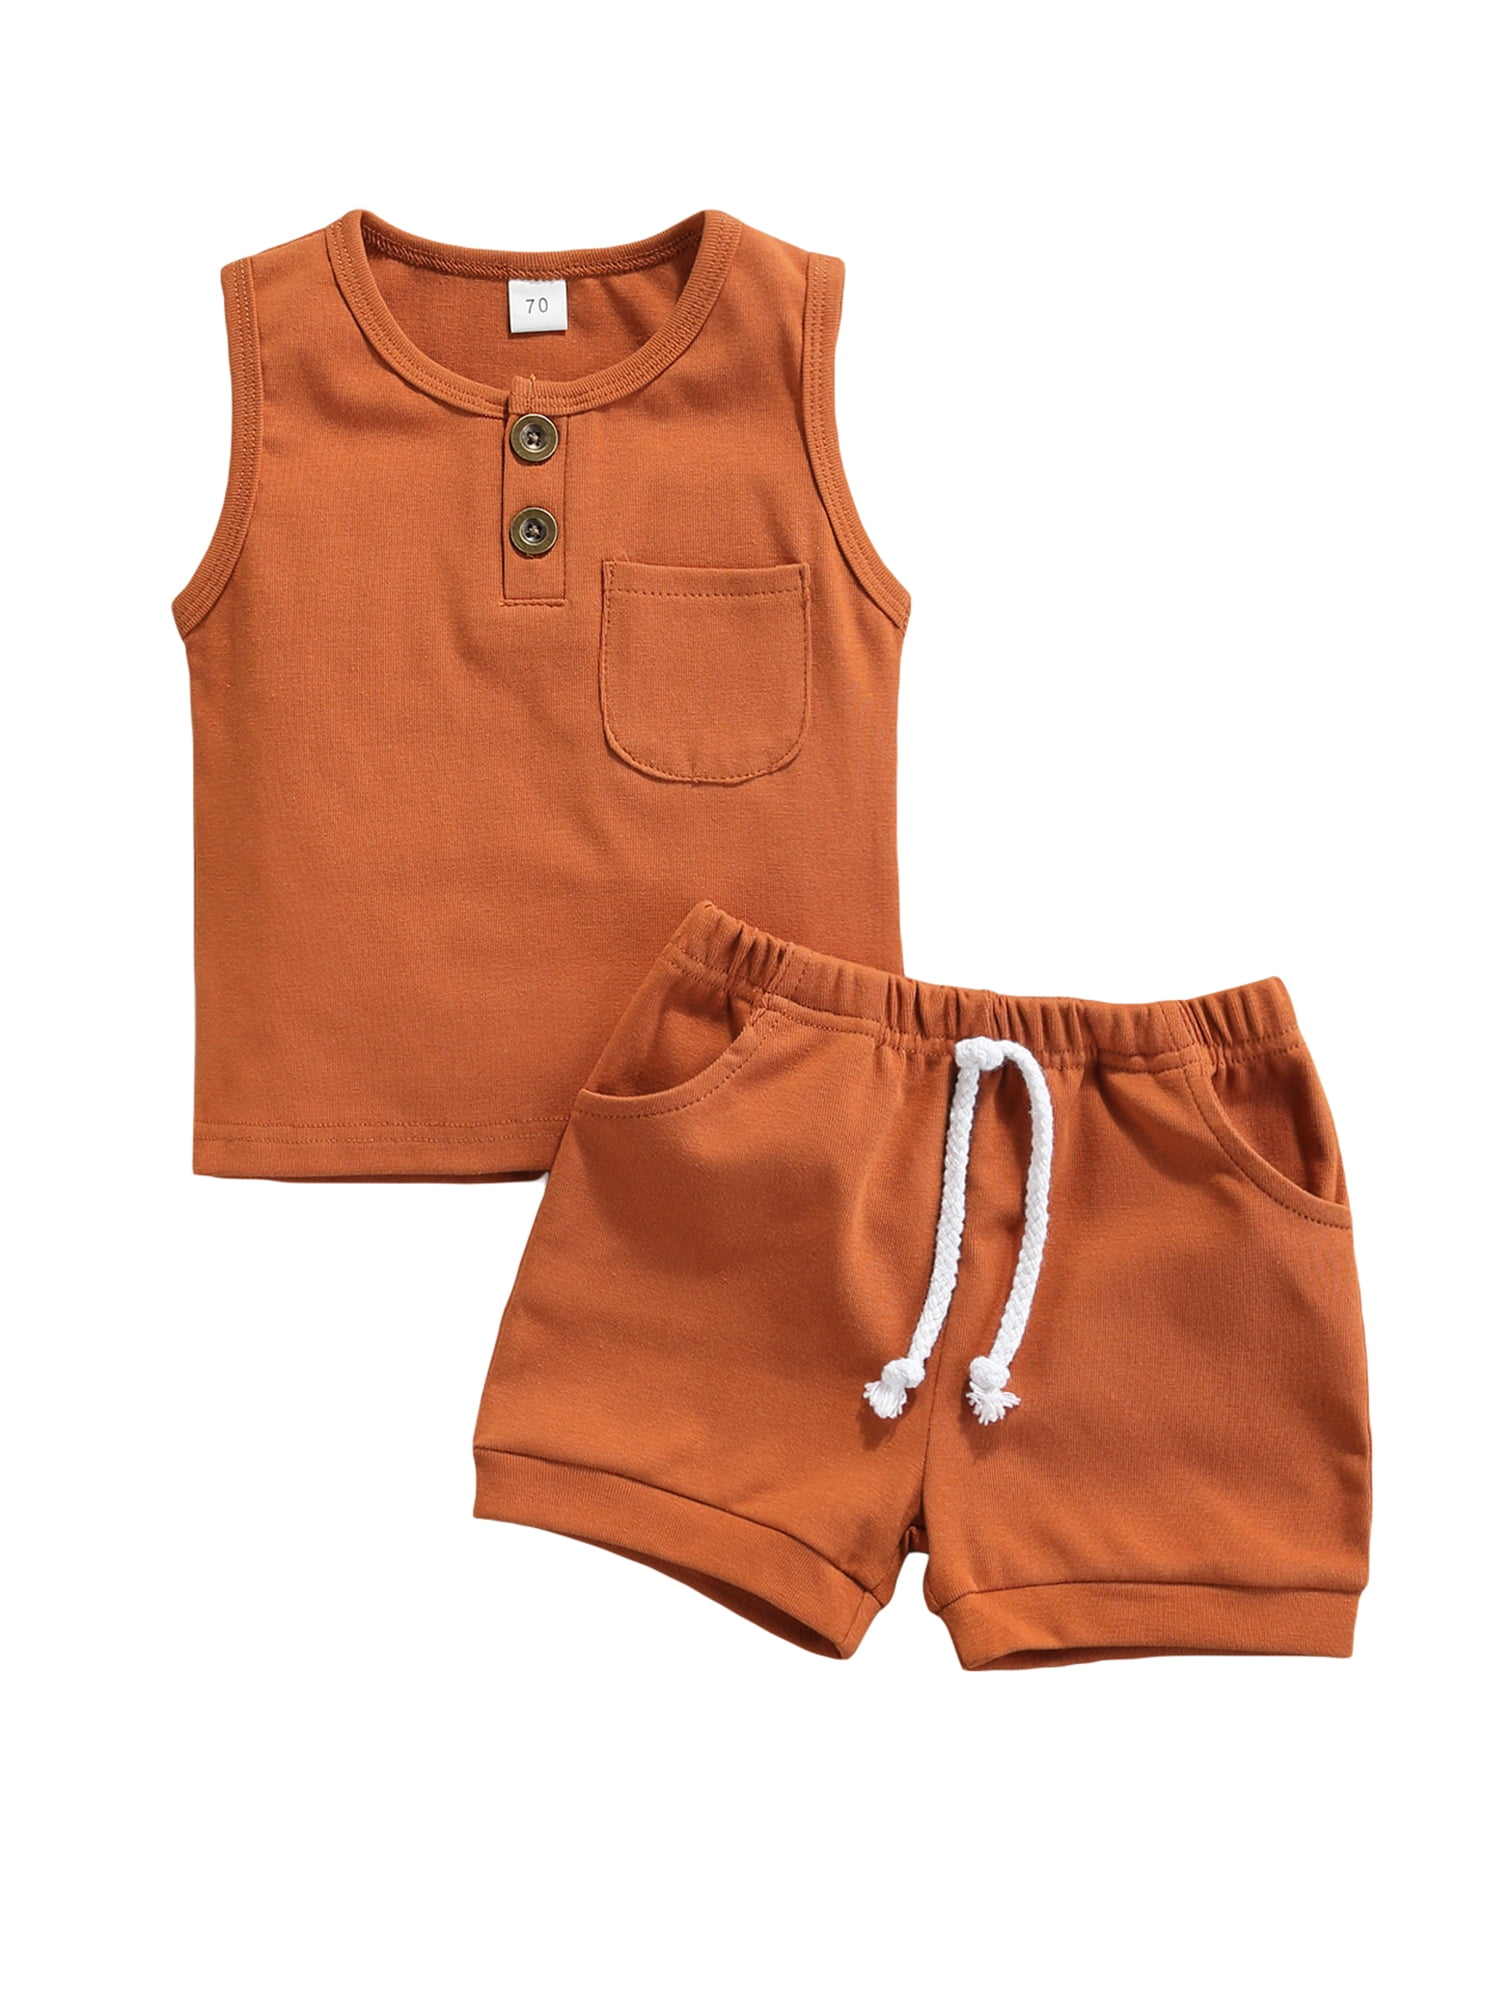 Toddler Baby Girl Shorts Outfits Sleeveless T Shirts Short Pant Pockets Clothing Sets 